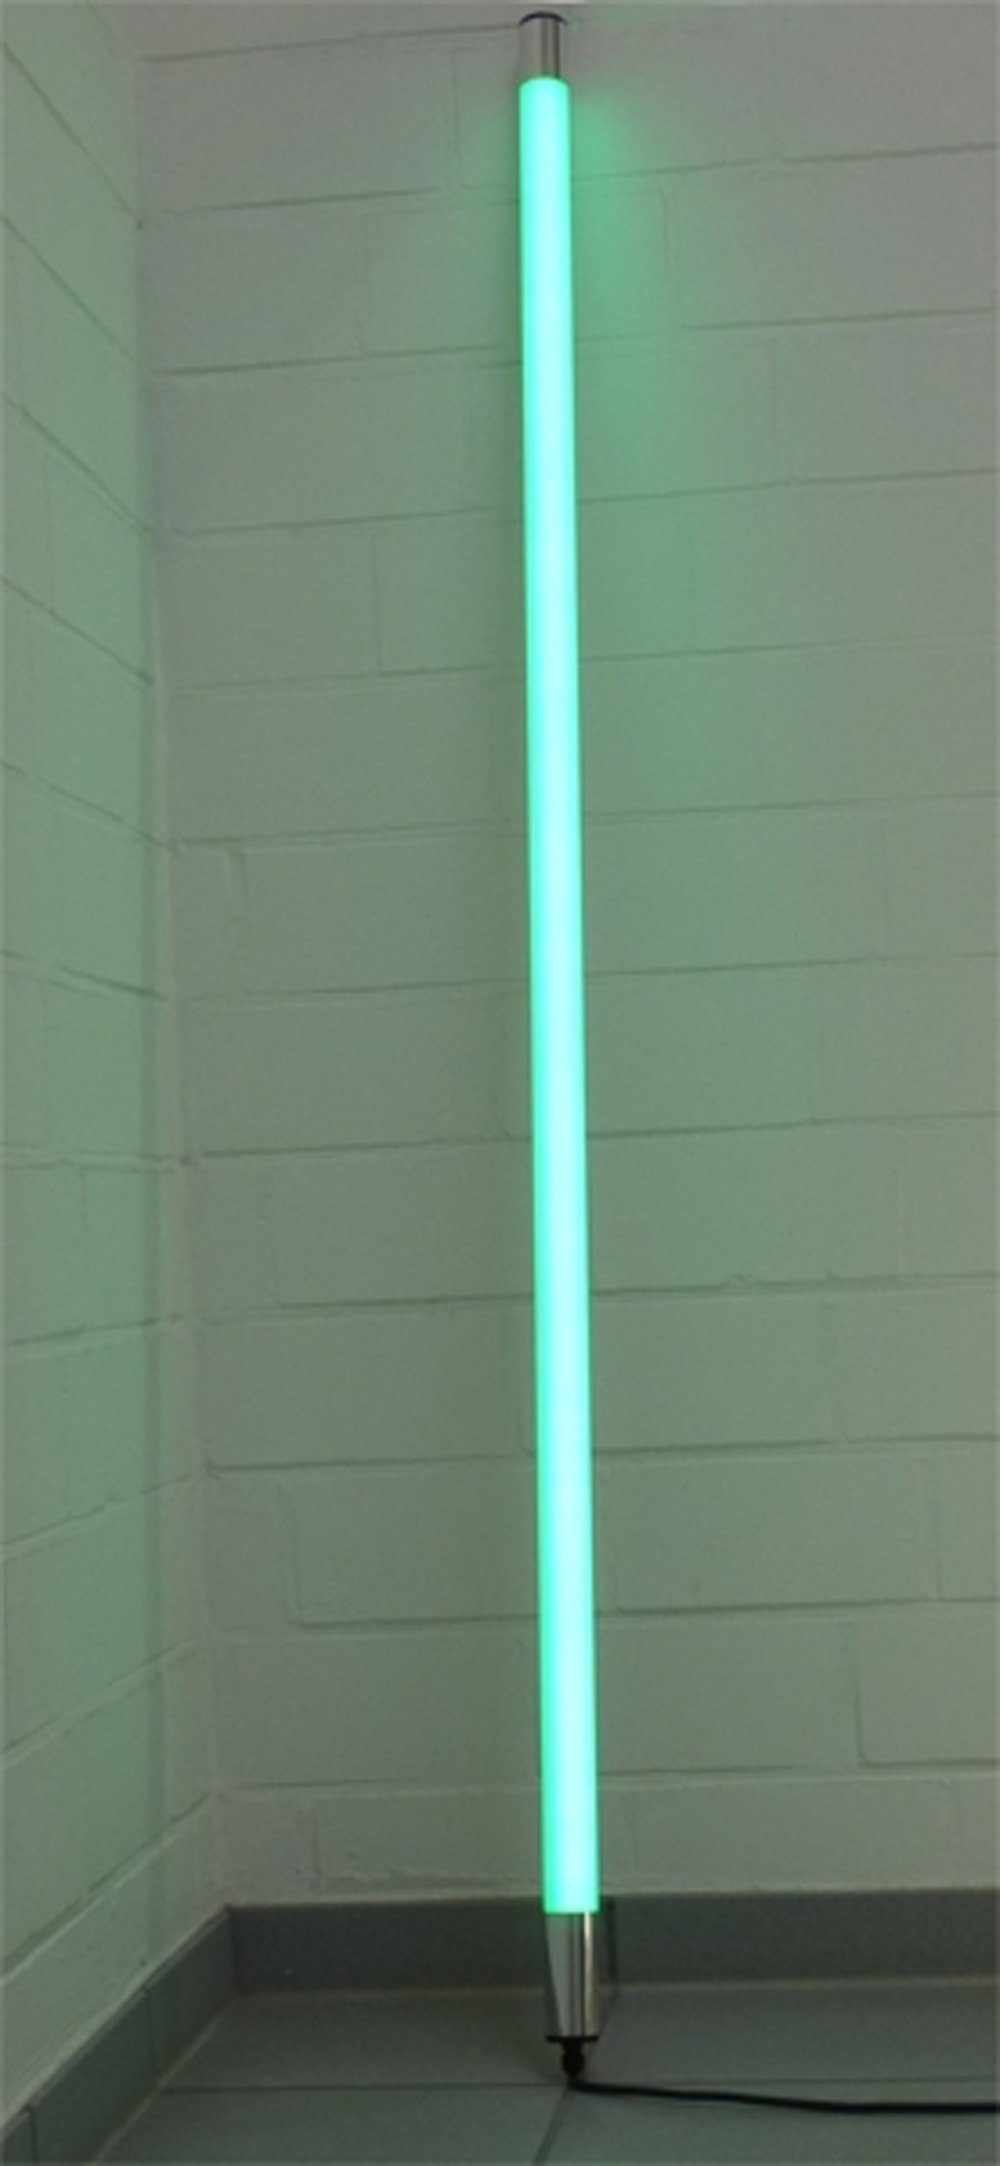 XENON LED Wandleuchte LED Leuchtstab Satiniert 0,63m Länge 800 Lumen IP44 für Außen Grün, LED Röhre T8, Xenon